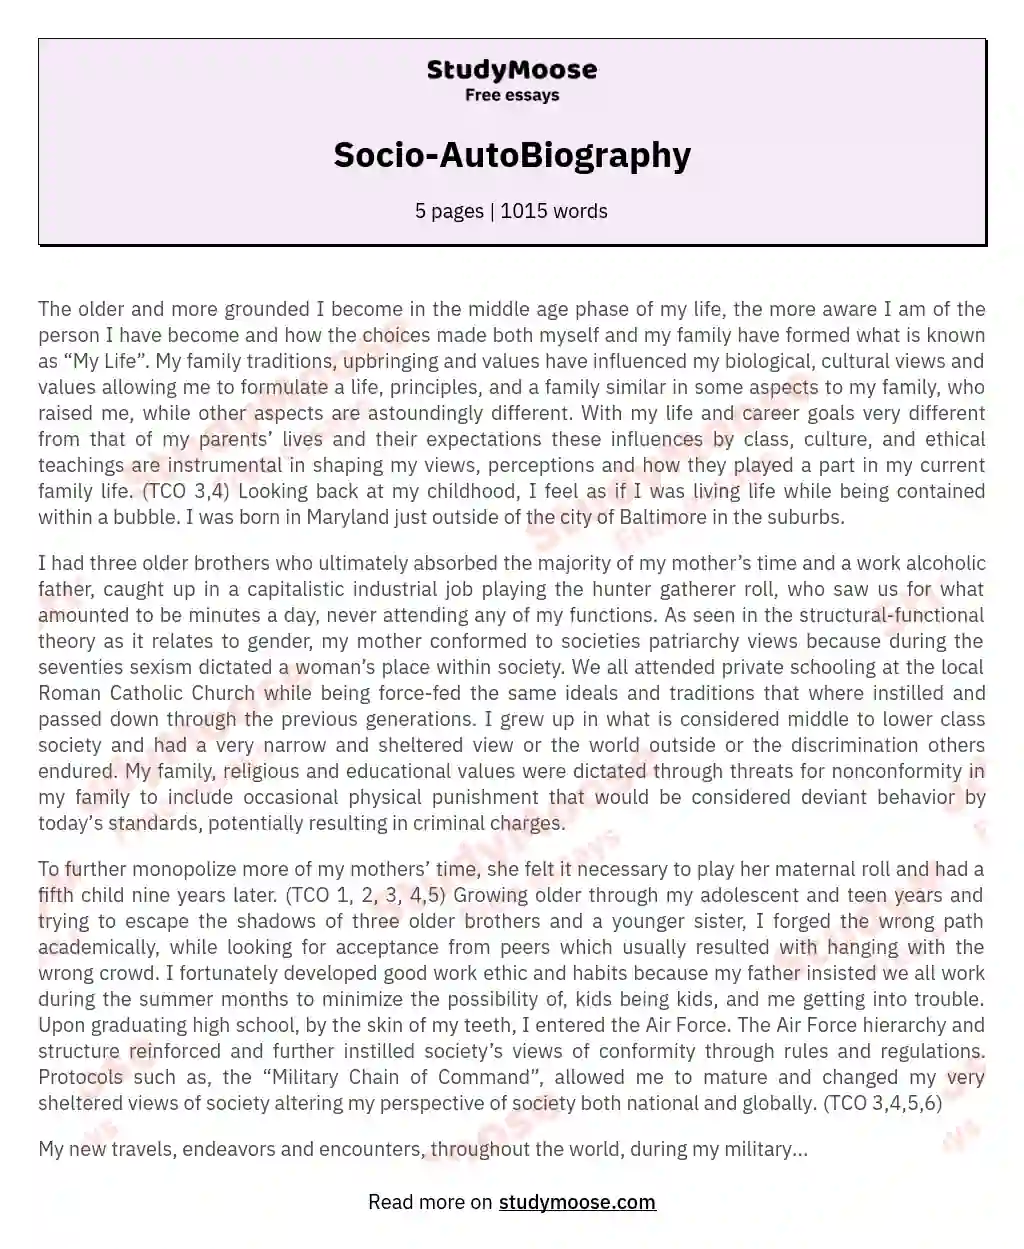 Socio-AutoBiography essay